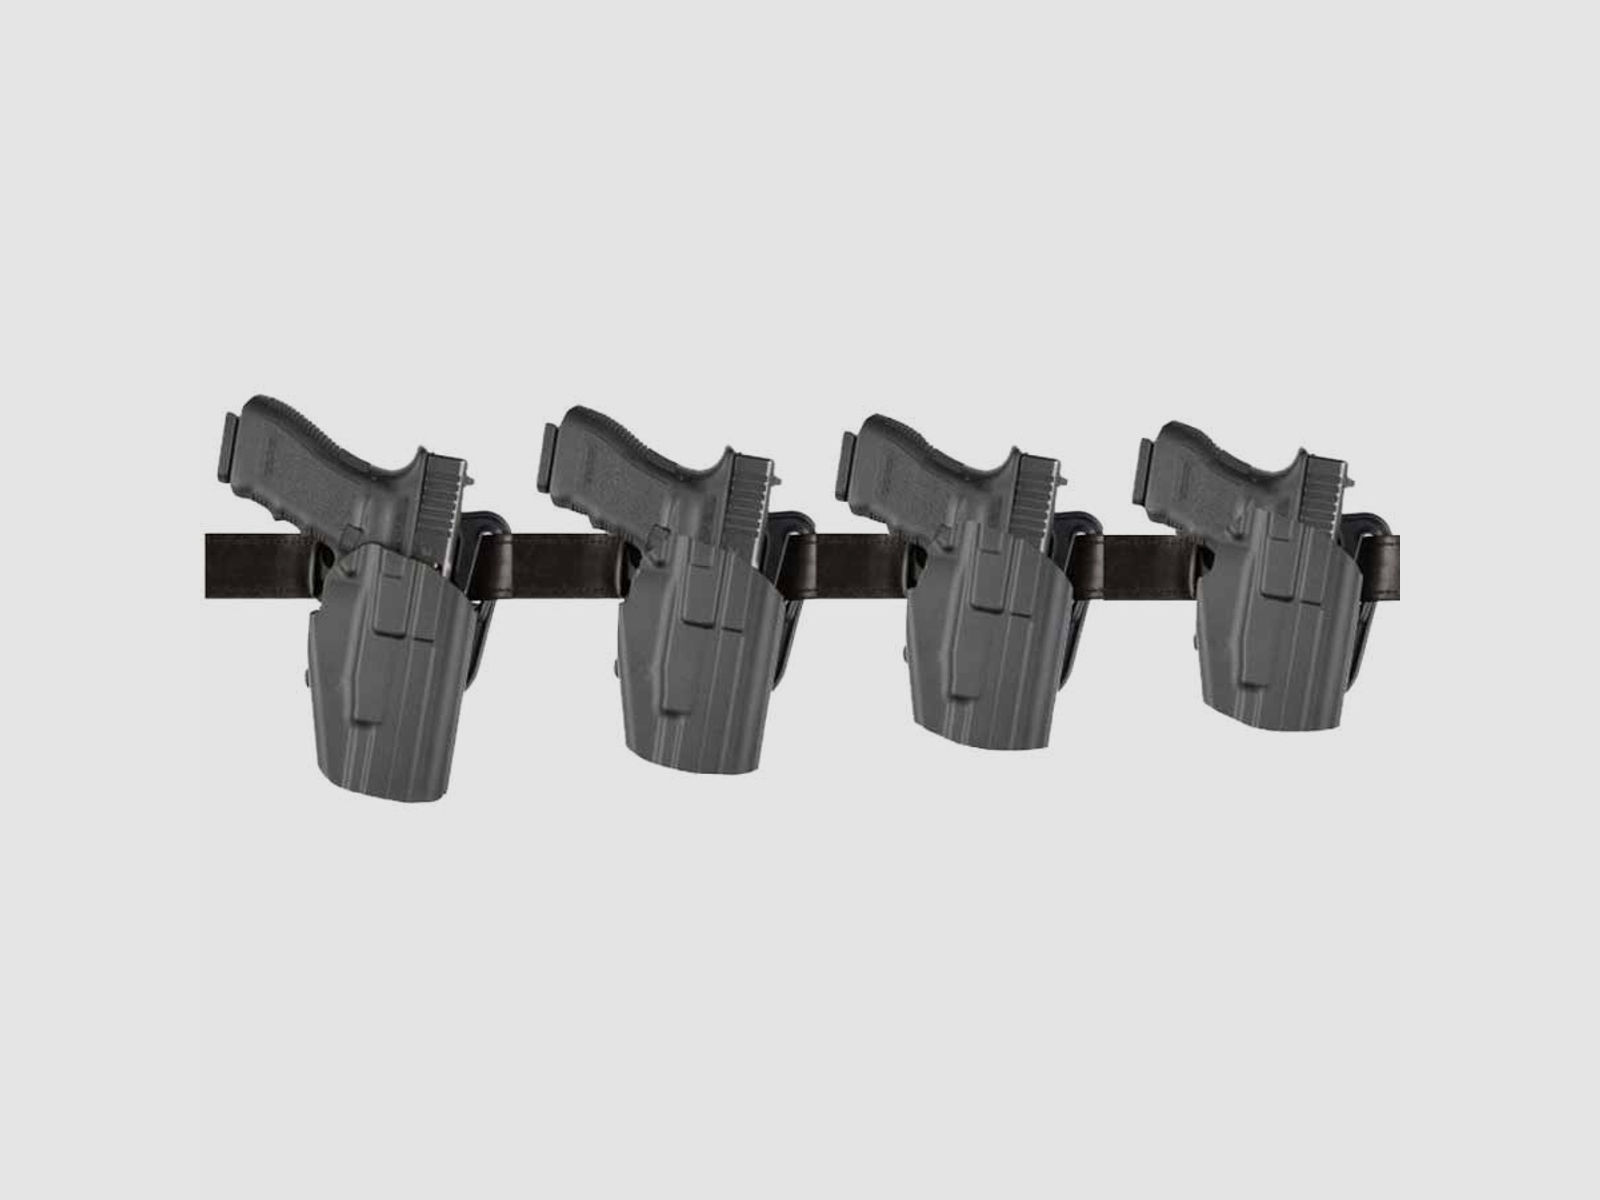 SAFARILAND 577 GLS "PRO-FIT" 7TS Gürtelholster 683* Colt 1911/PARA ORD./ Ruger/Sig Sauer/ S&W/Spring./STI/Tangfoglio/Taurus,,CZ 75,Glock 17L/34/35/40/41,Walther PPQ 5" 9mm,.40-Beige-Rechts